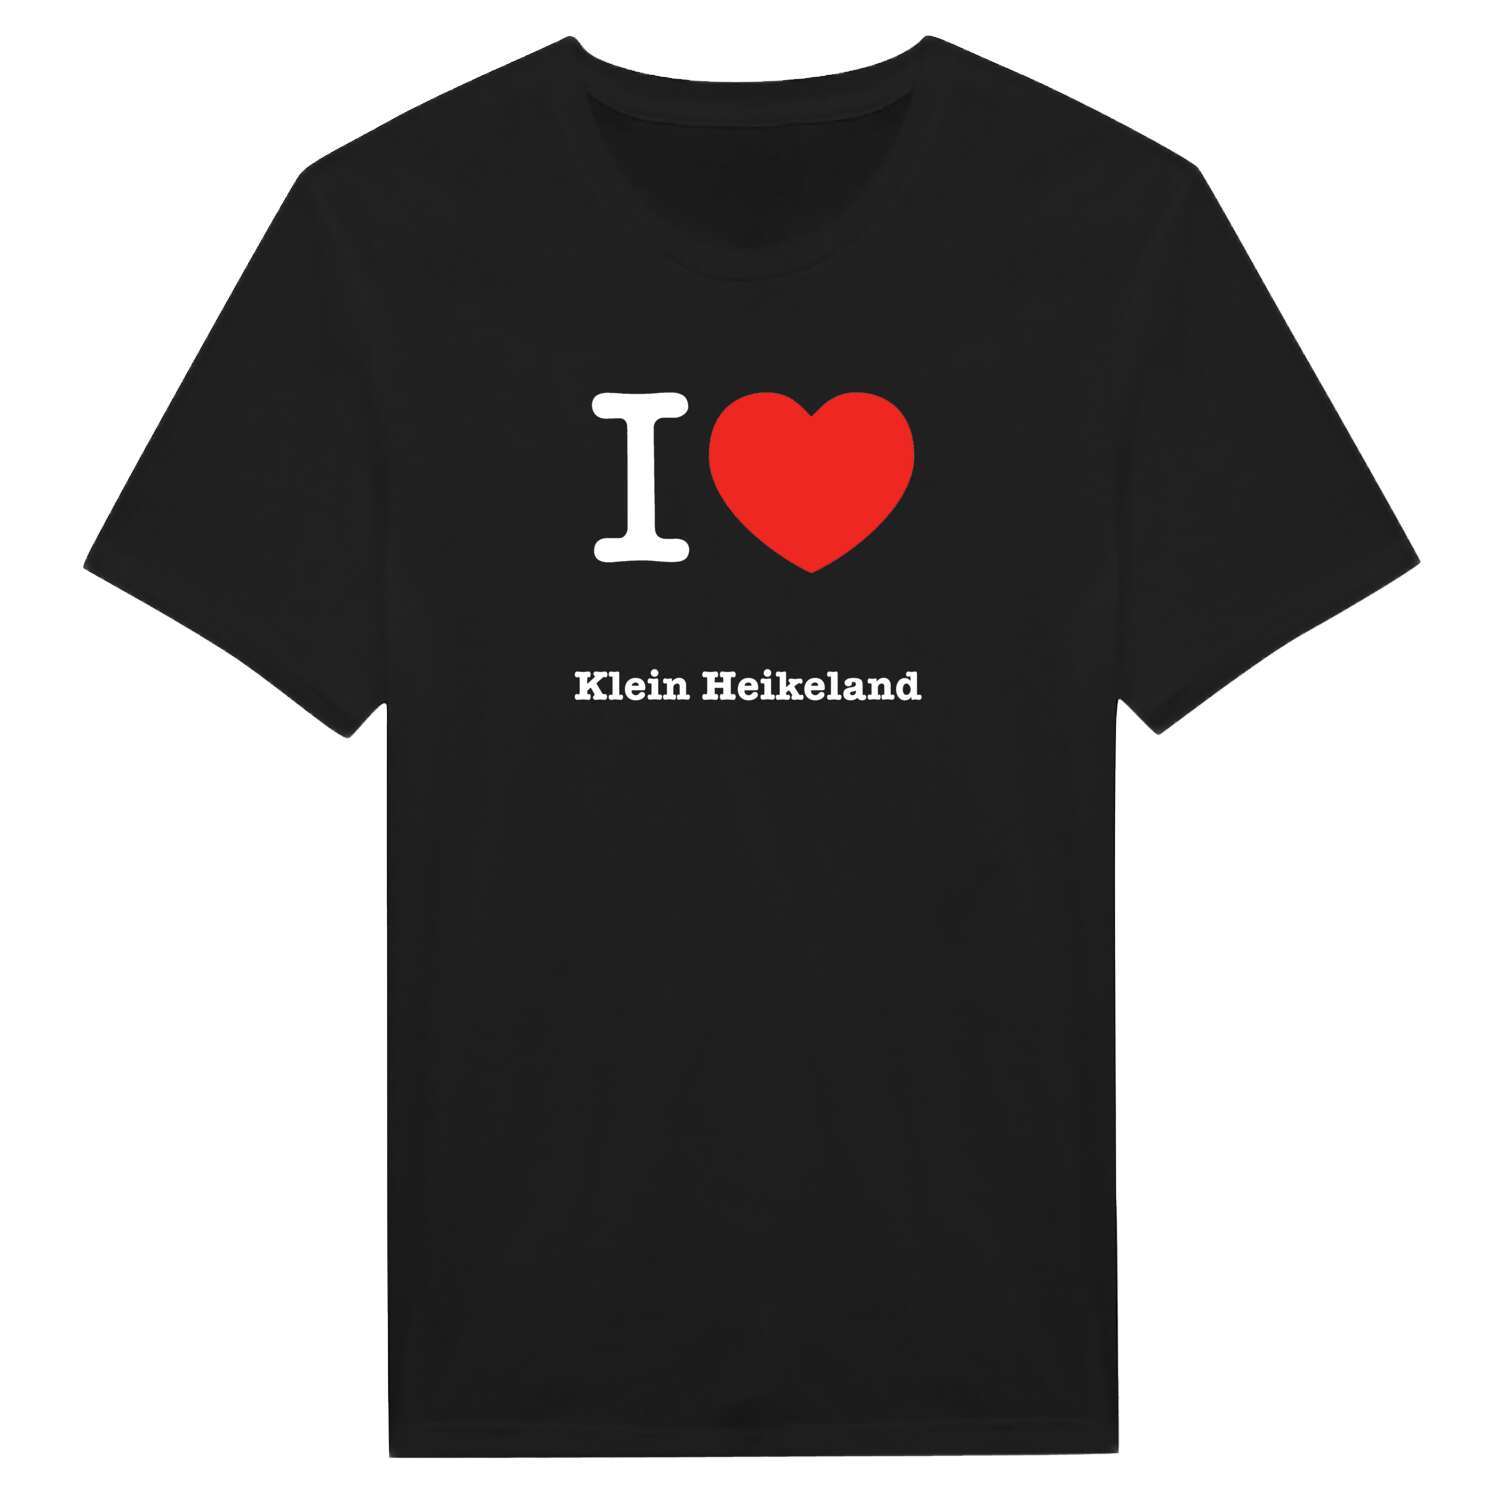 Klein Heikeland T-Shirt »I love«